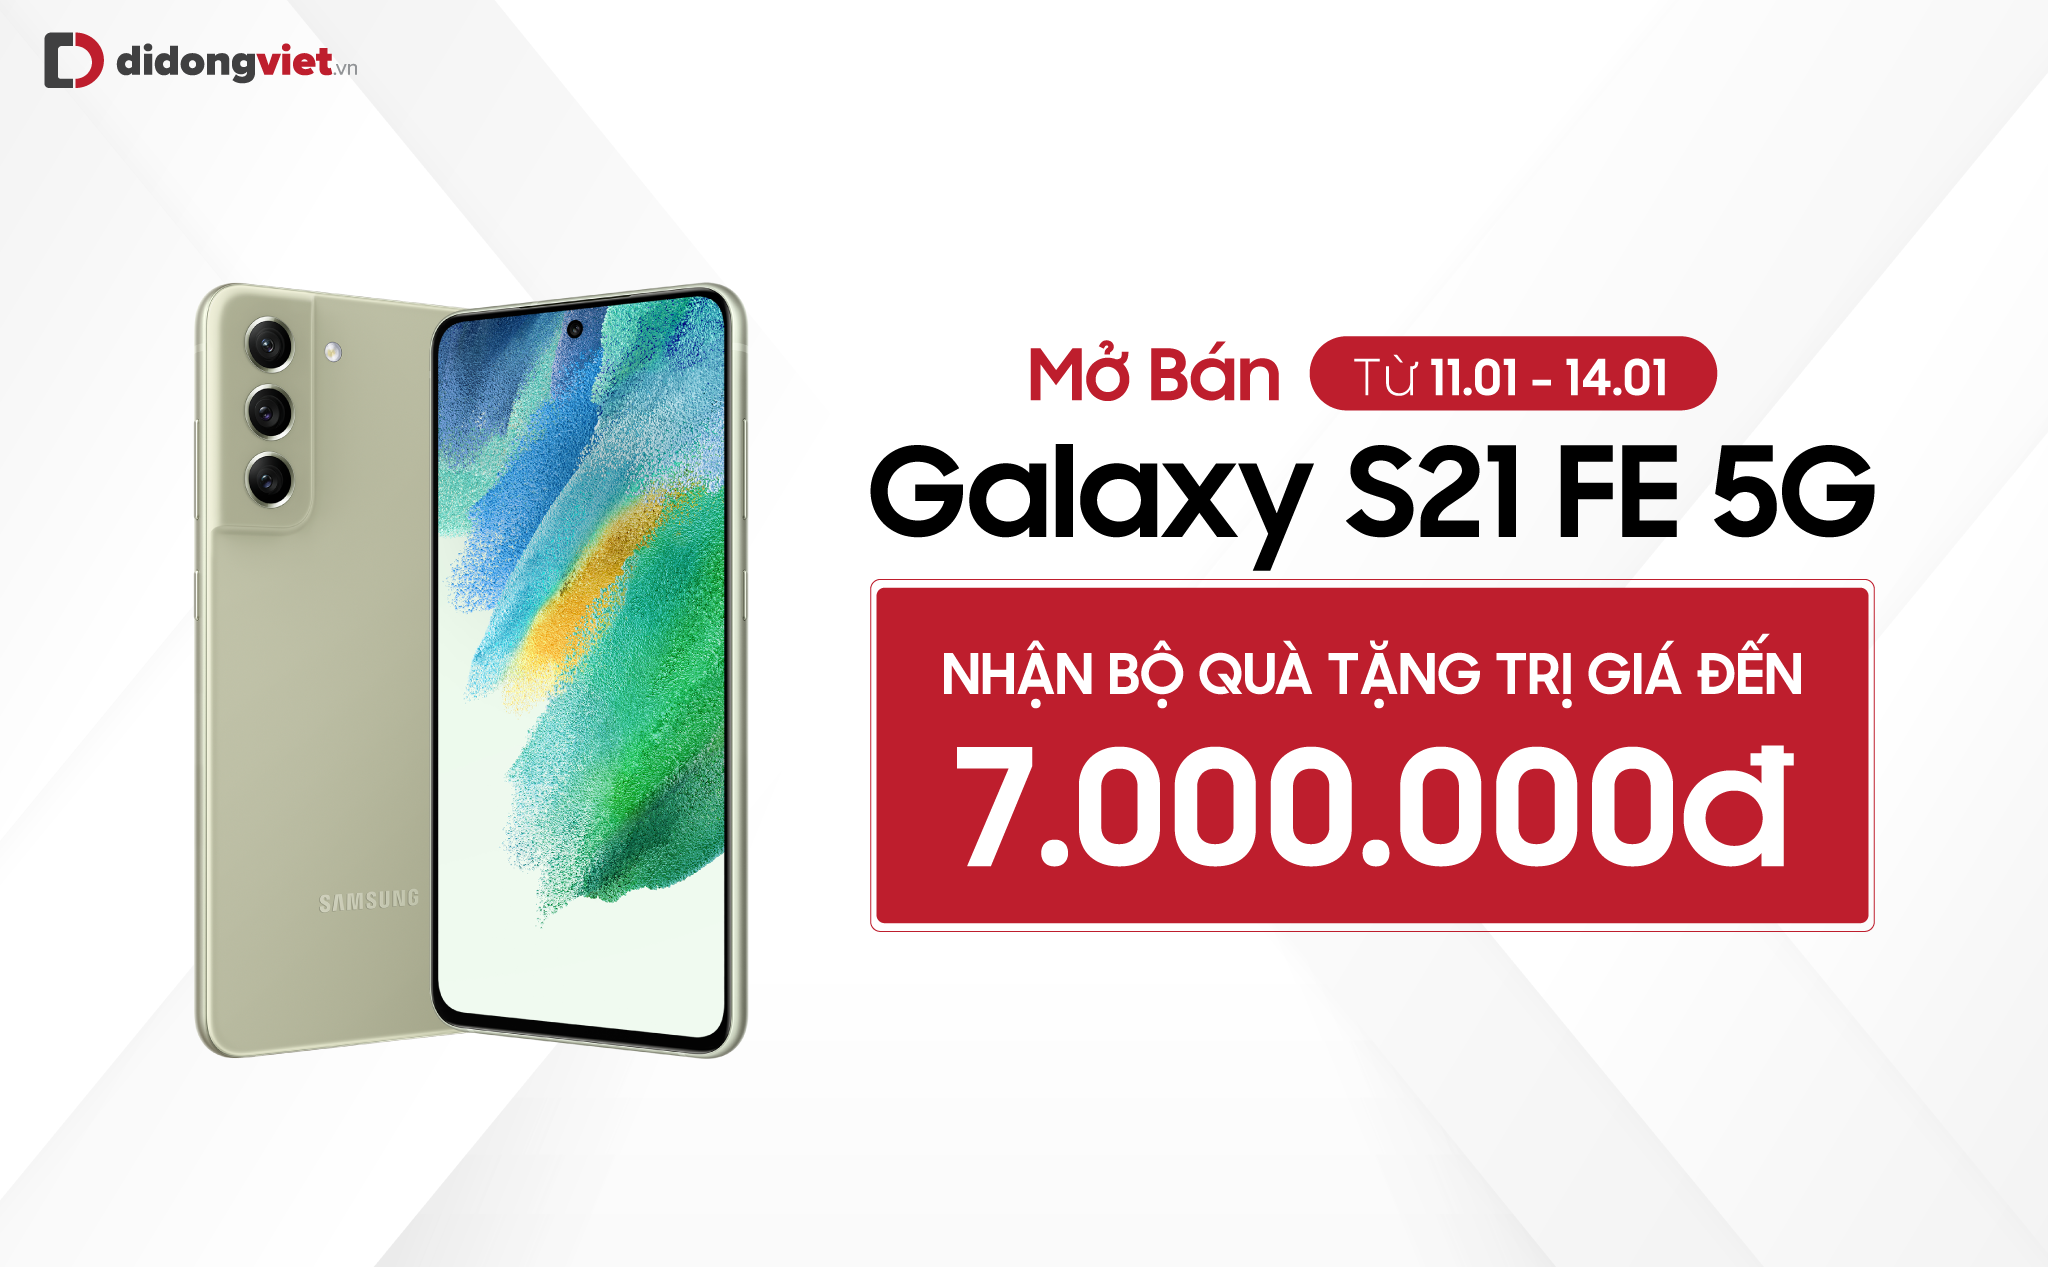 Samsung Galaxy S21 FE chính thức mở bán tại Việt Nam kèm bộ quà tặng lên đến 7 triệu đồng